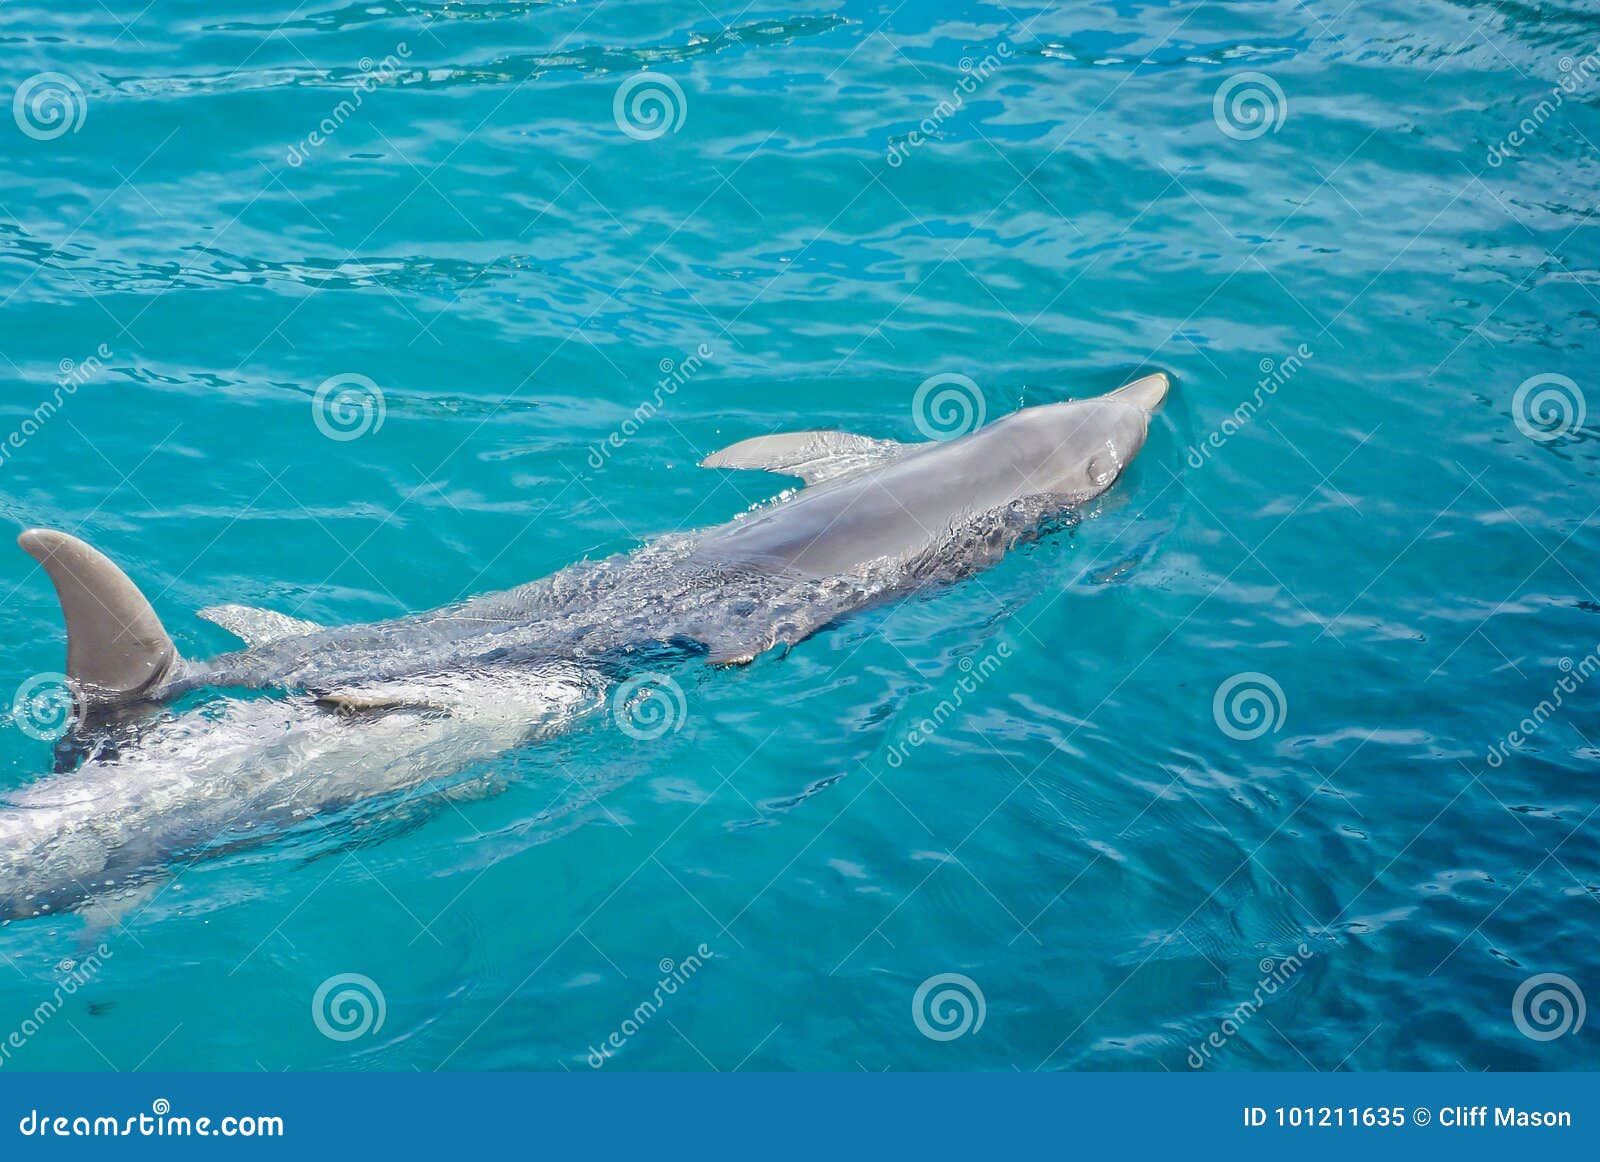 Dois golfinhos na água. Dois golfinhos que nadam na associação